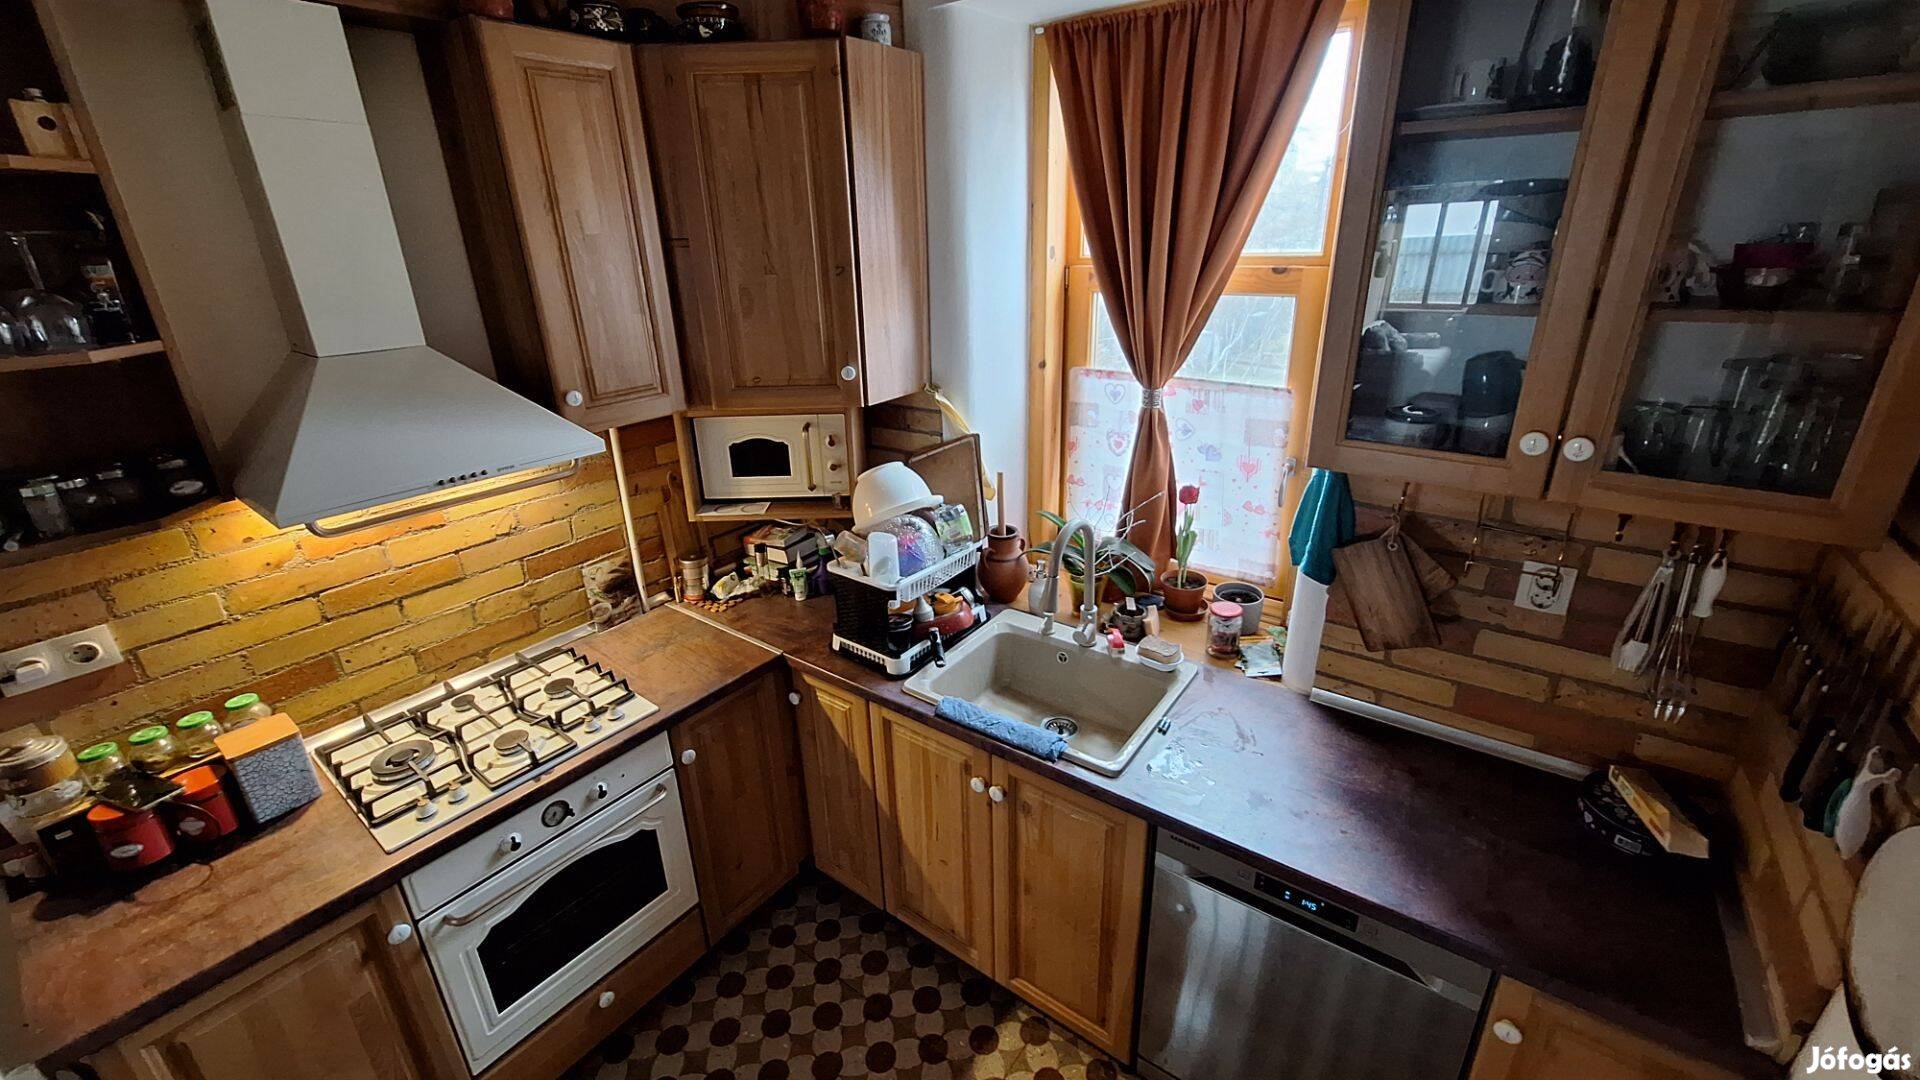 Eladó családi Ház Tiszakécskén baráti áron Óriási telekkel pincével